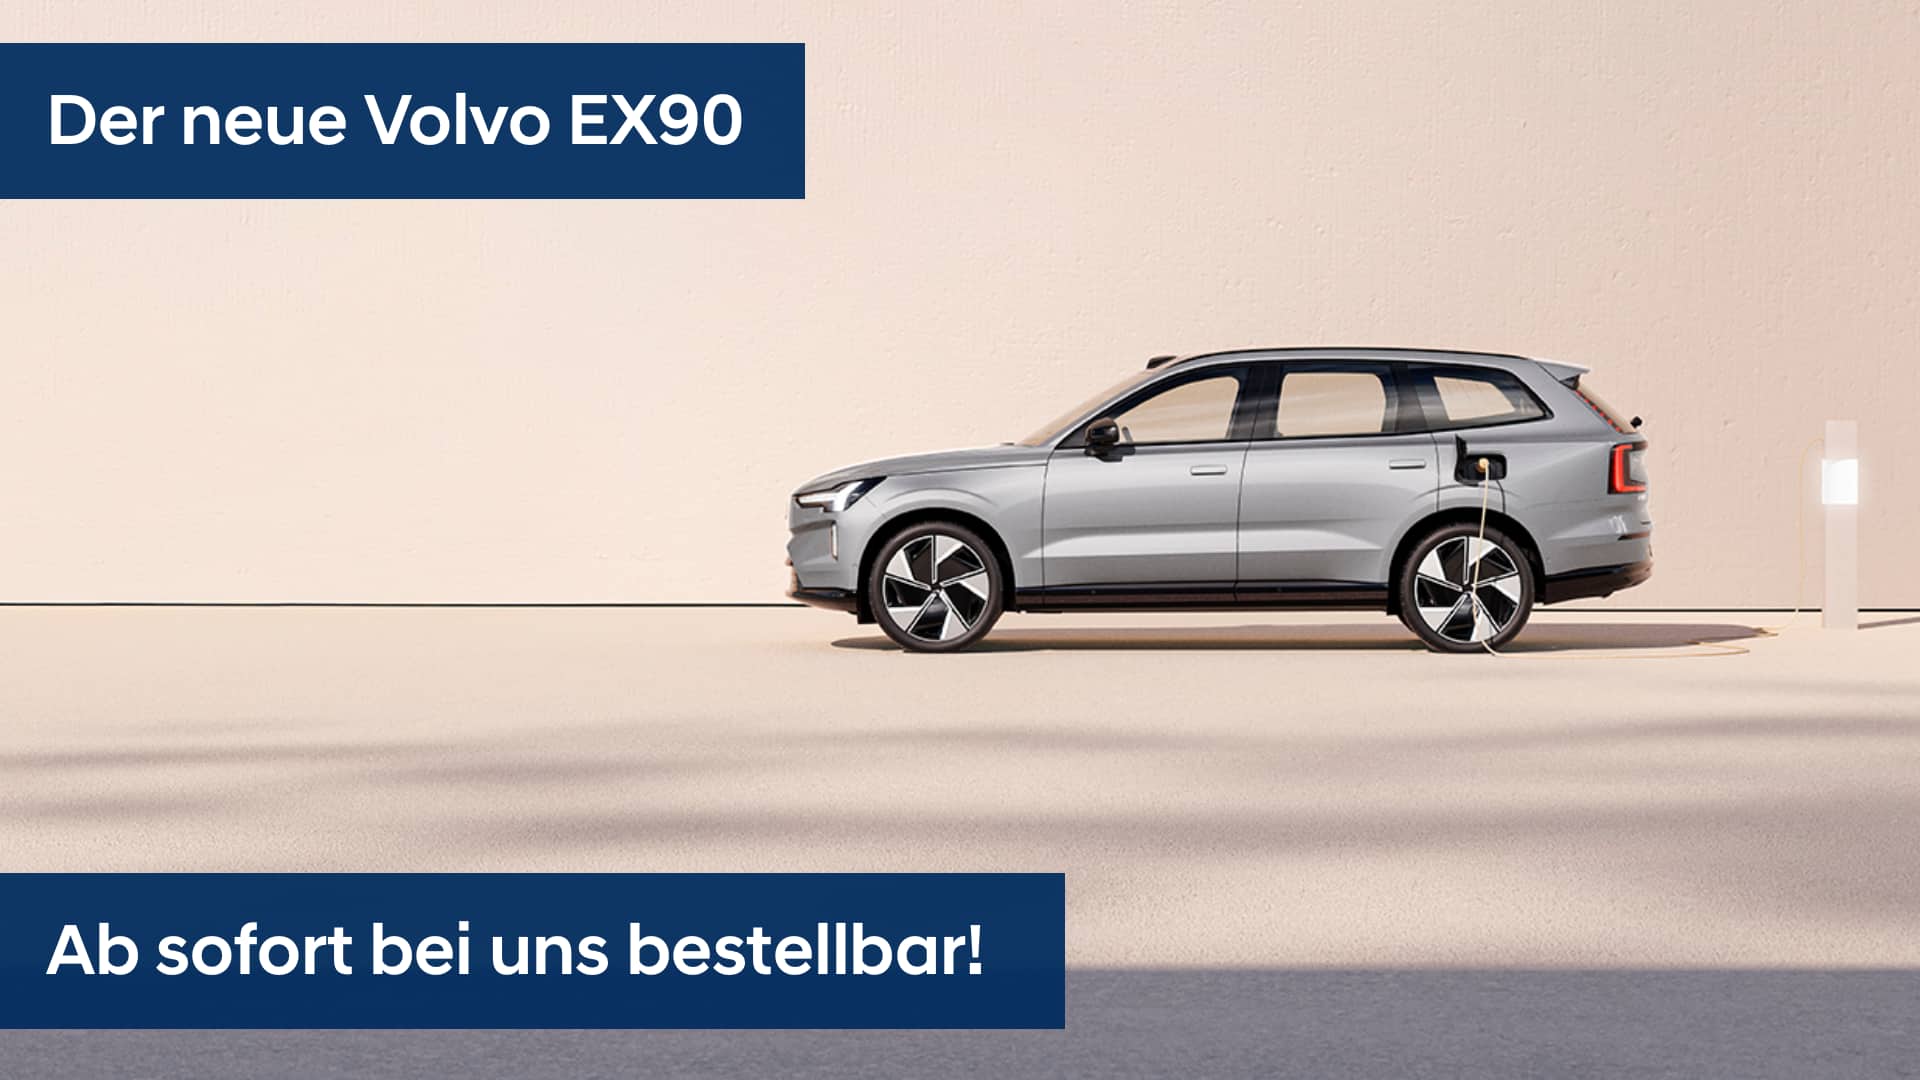 Der neue Volvo EX90